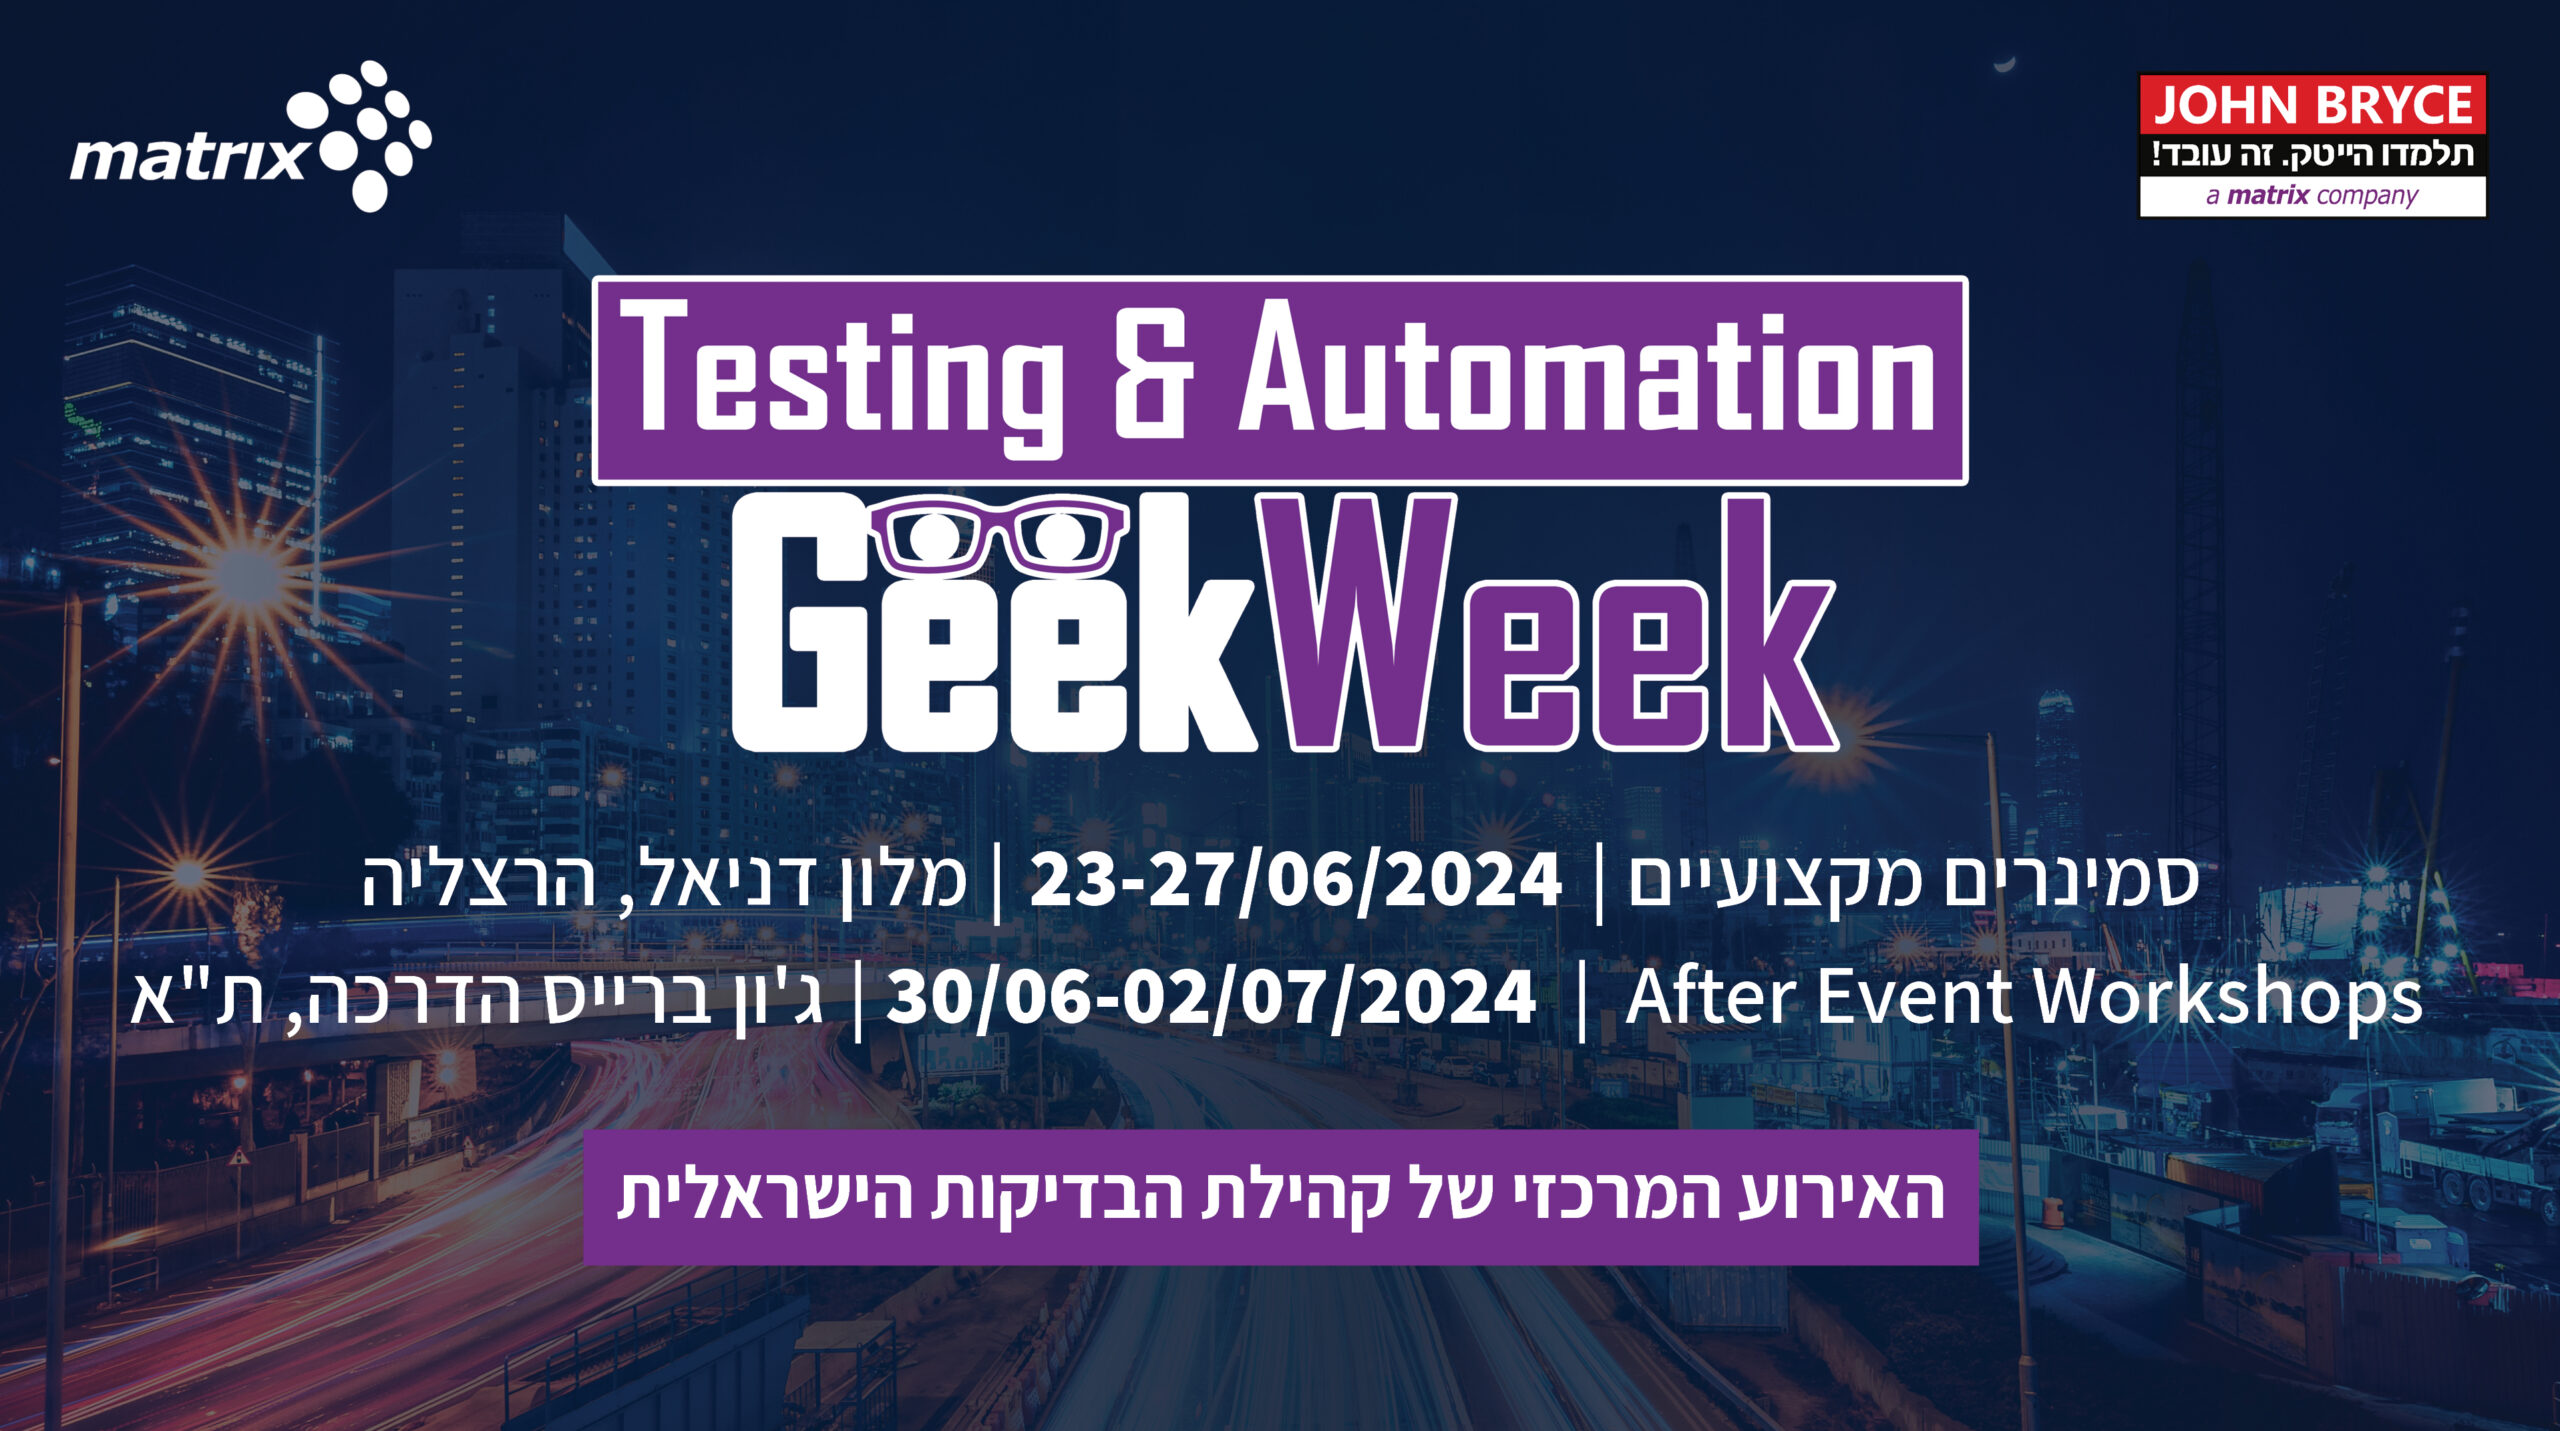 Testing & Automation GeekWeek 2024